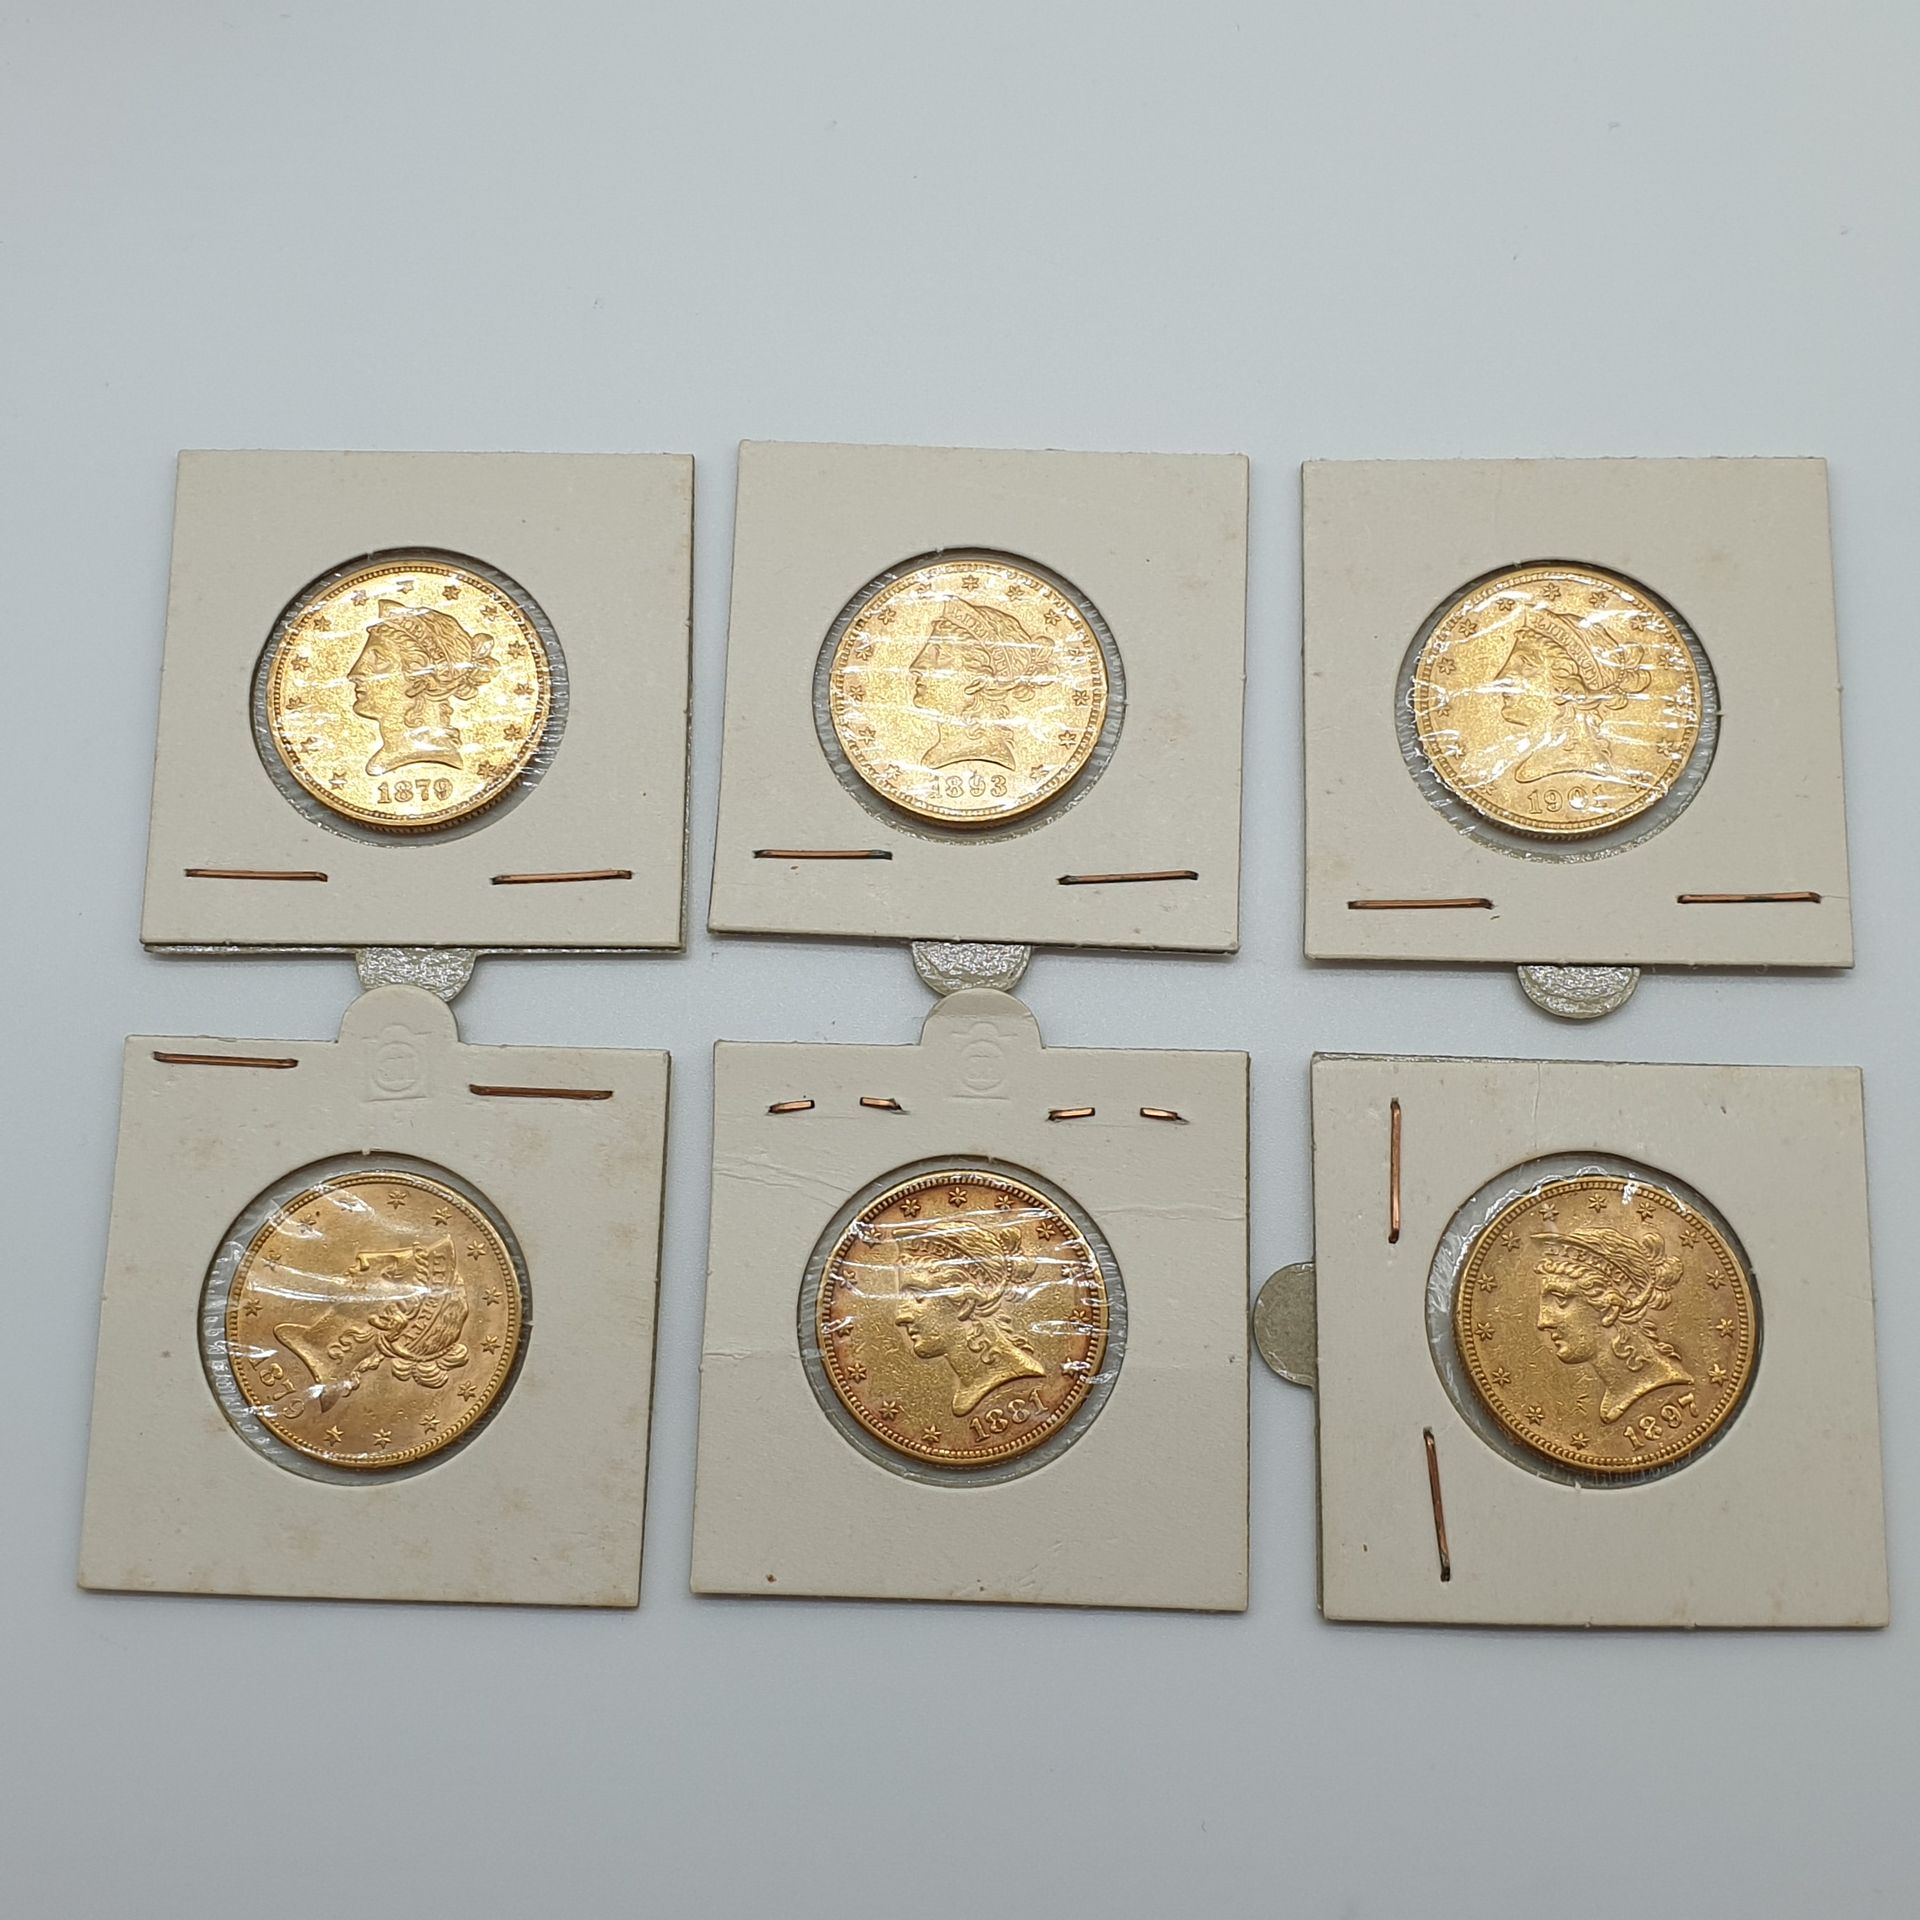 Null 1893/1879/1901/1881/1897/1879六枚10美元金币拍品

在吸塑包装中